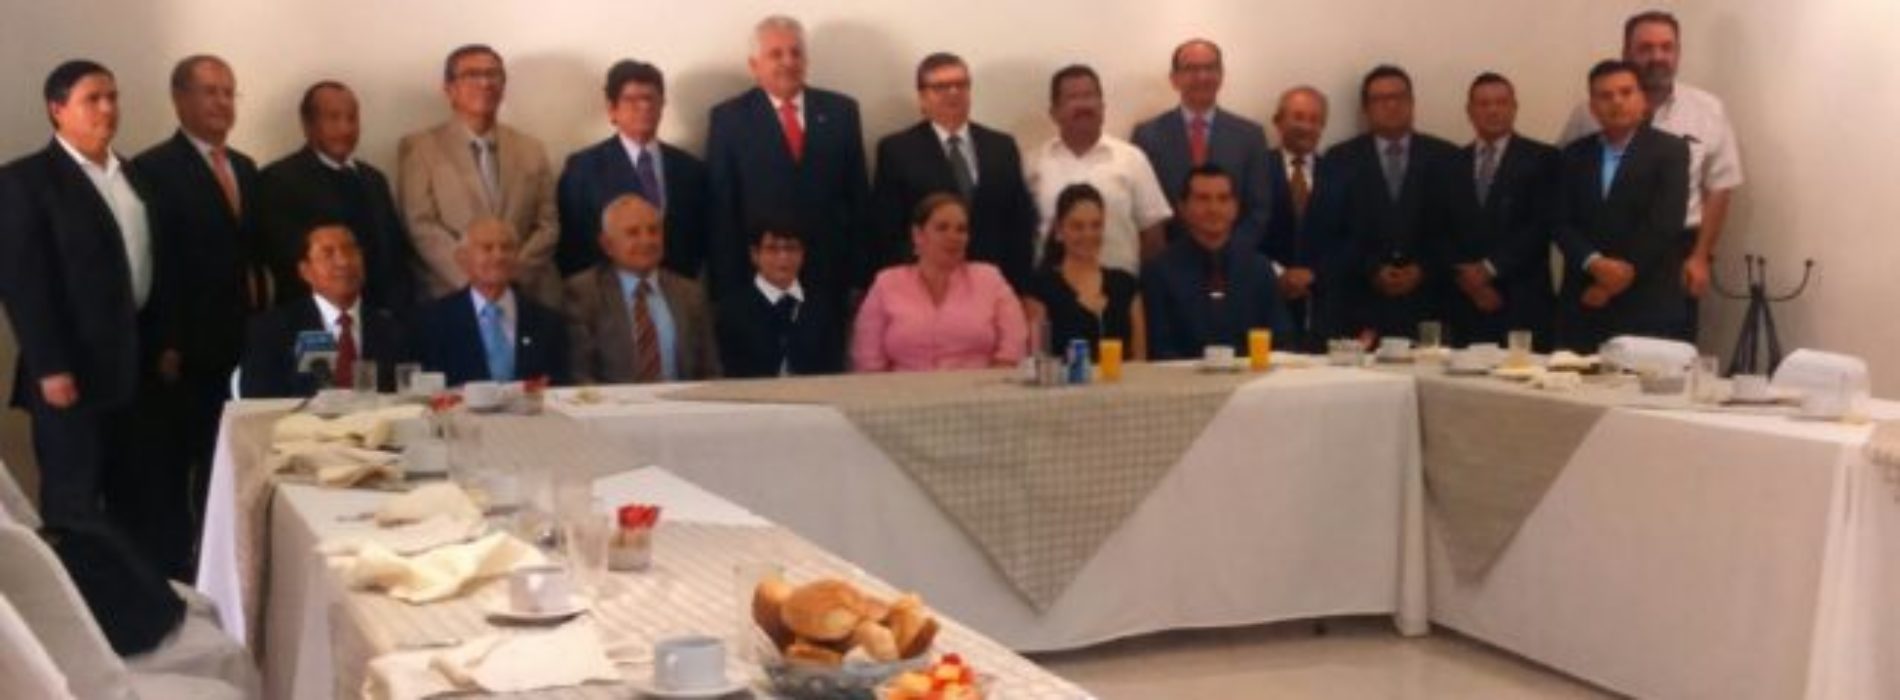 Pide Bolaños Cacho desaparición del Consejo de la Judicatura
en Oaxaca por costoso e ineficiente